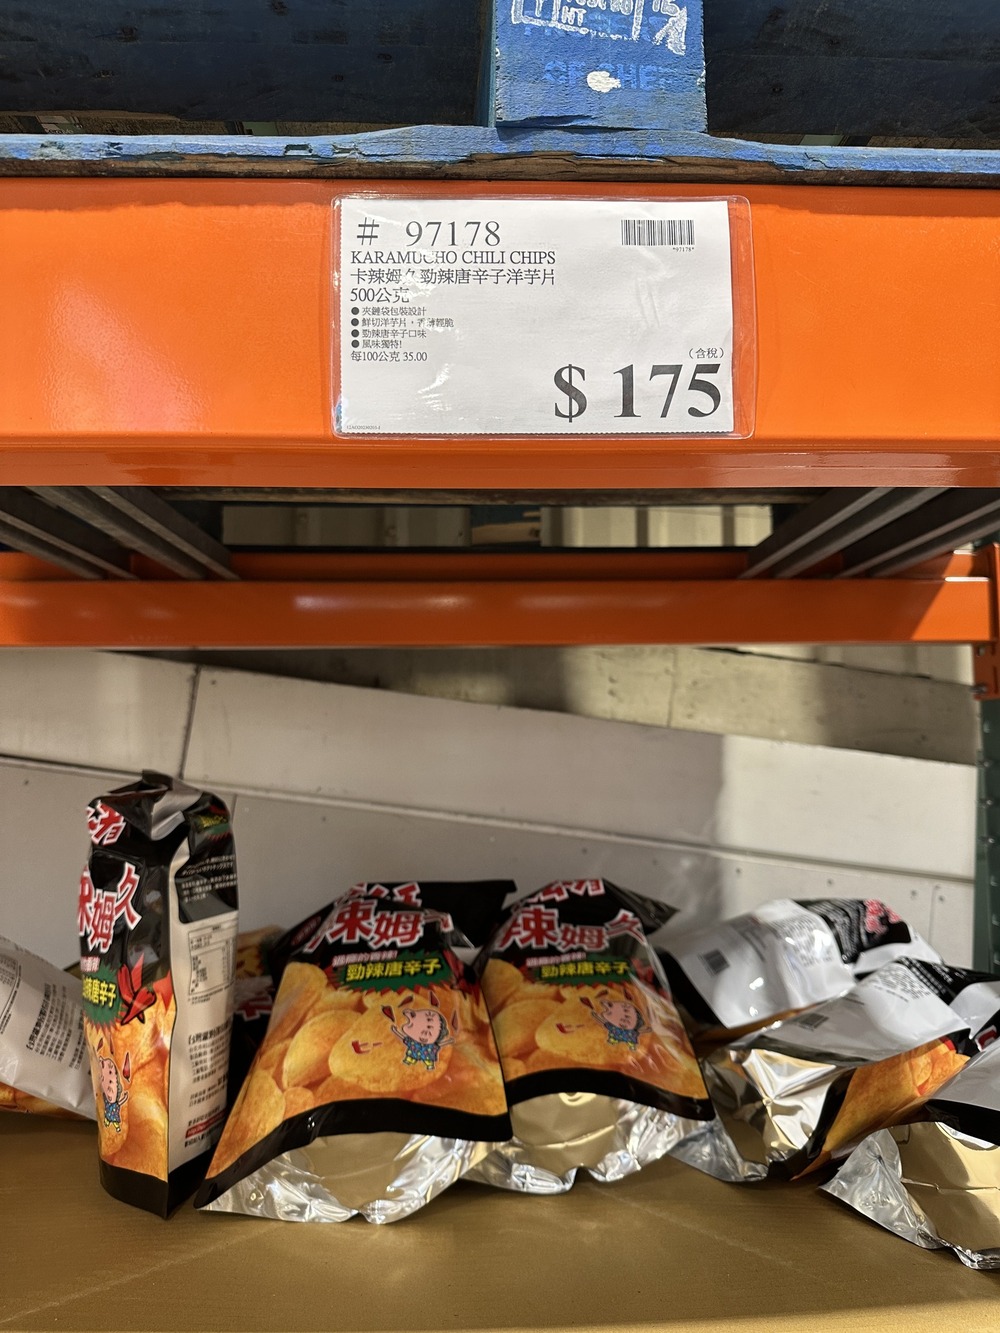 網友貼出洋芋片大幅漲價。(翻攝/臉書社團「Cstco好市多 商品經驗老實說」)